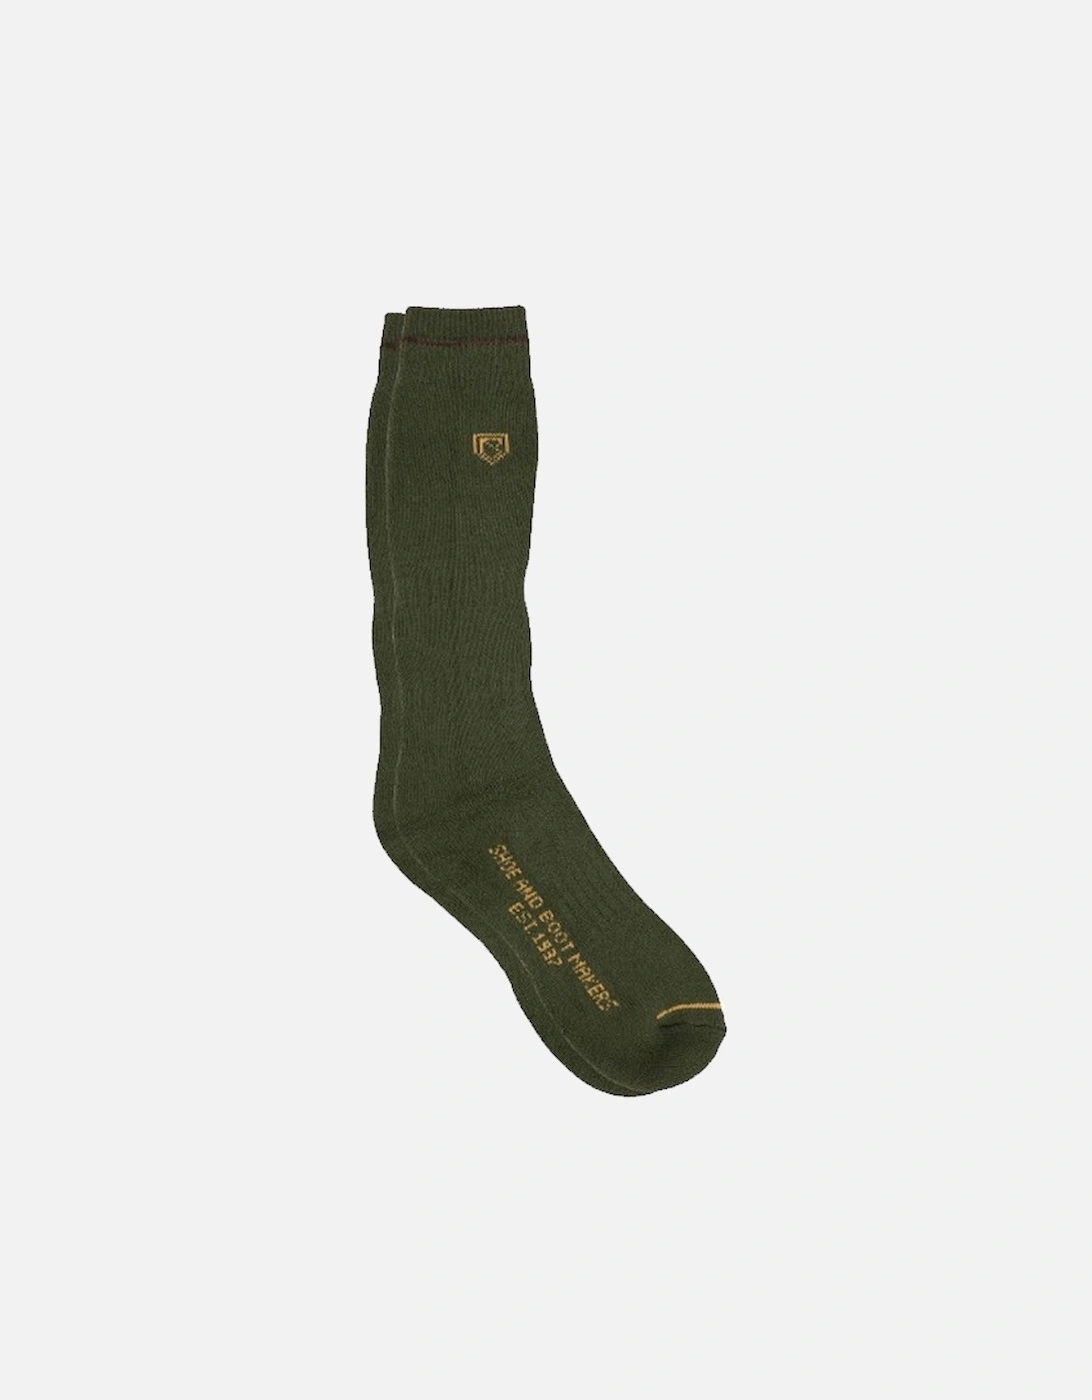 Unisex Short Boot Socks Olive, 2 of 1